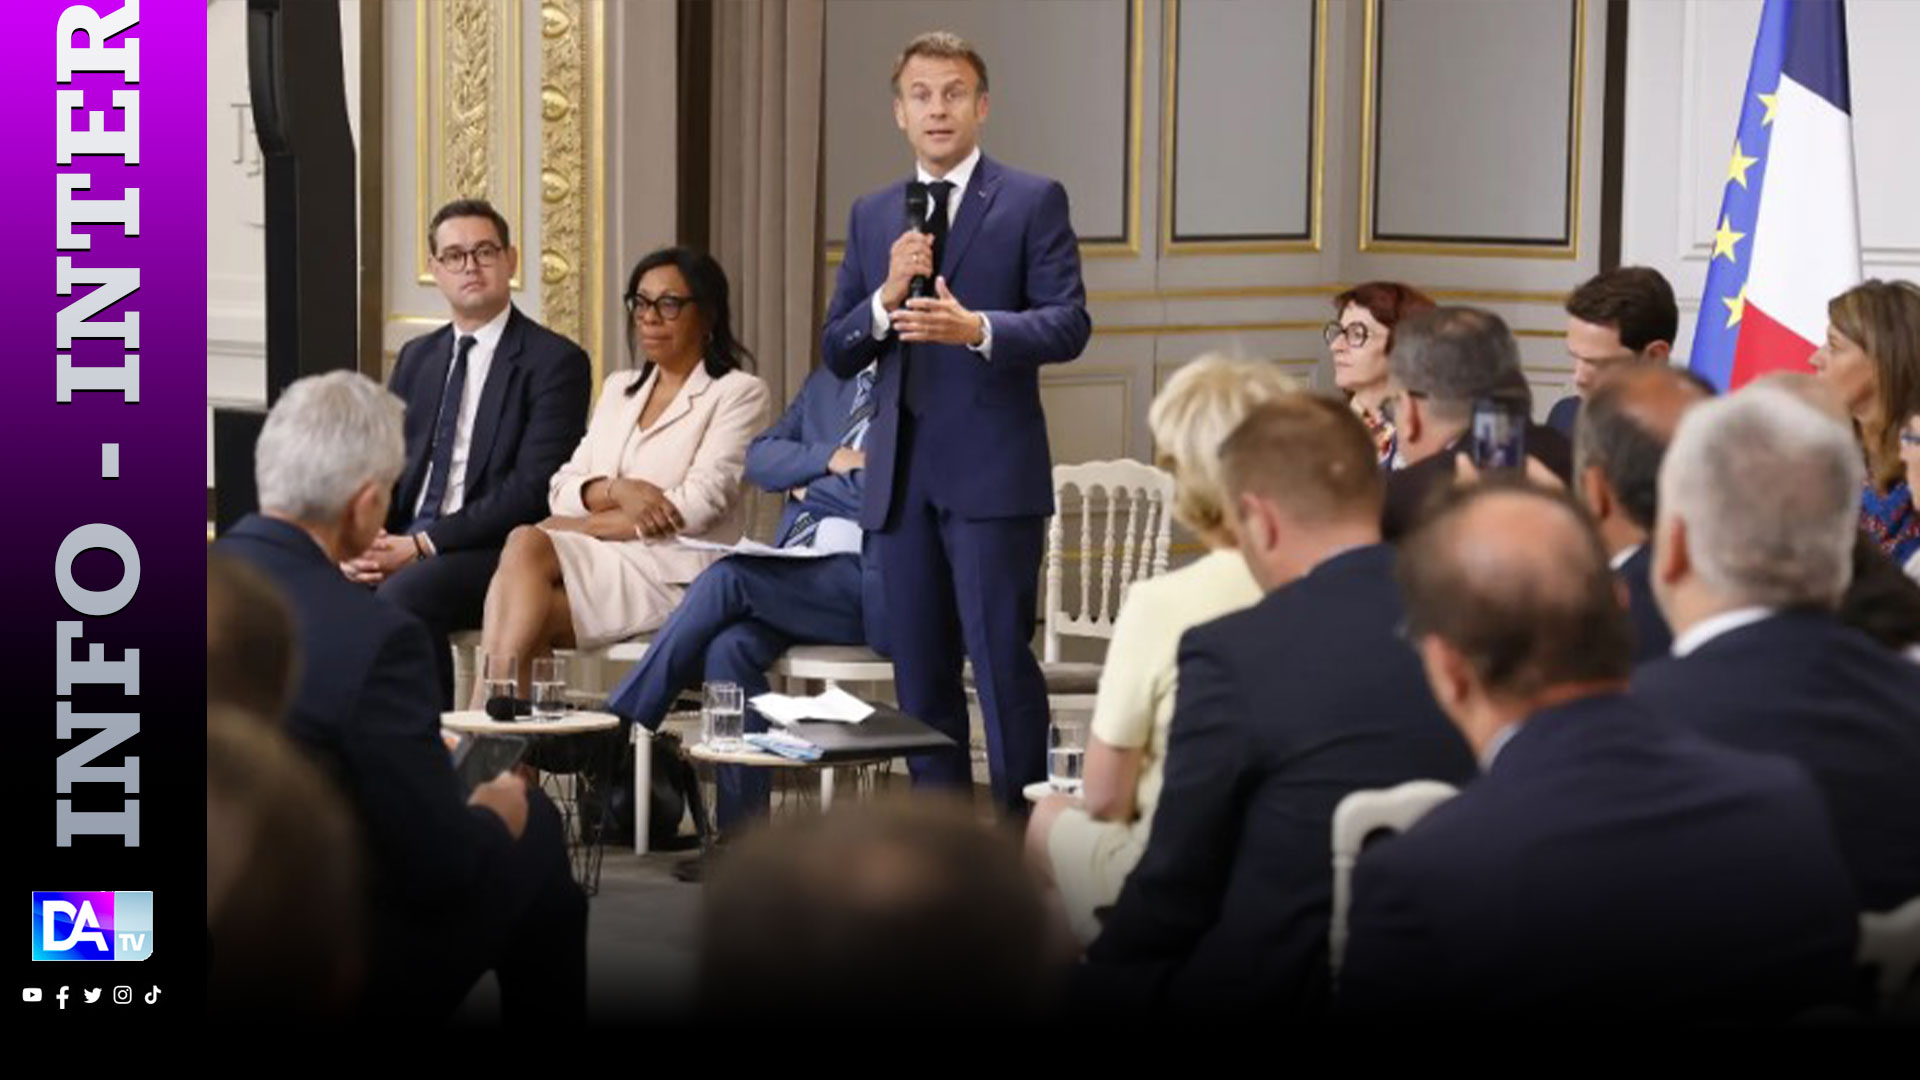 Emeutes en France: Macron annonce une loi d'urgence pour accélérer la reconstruction (participant)